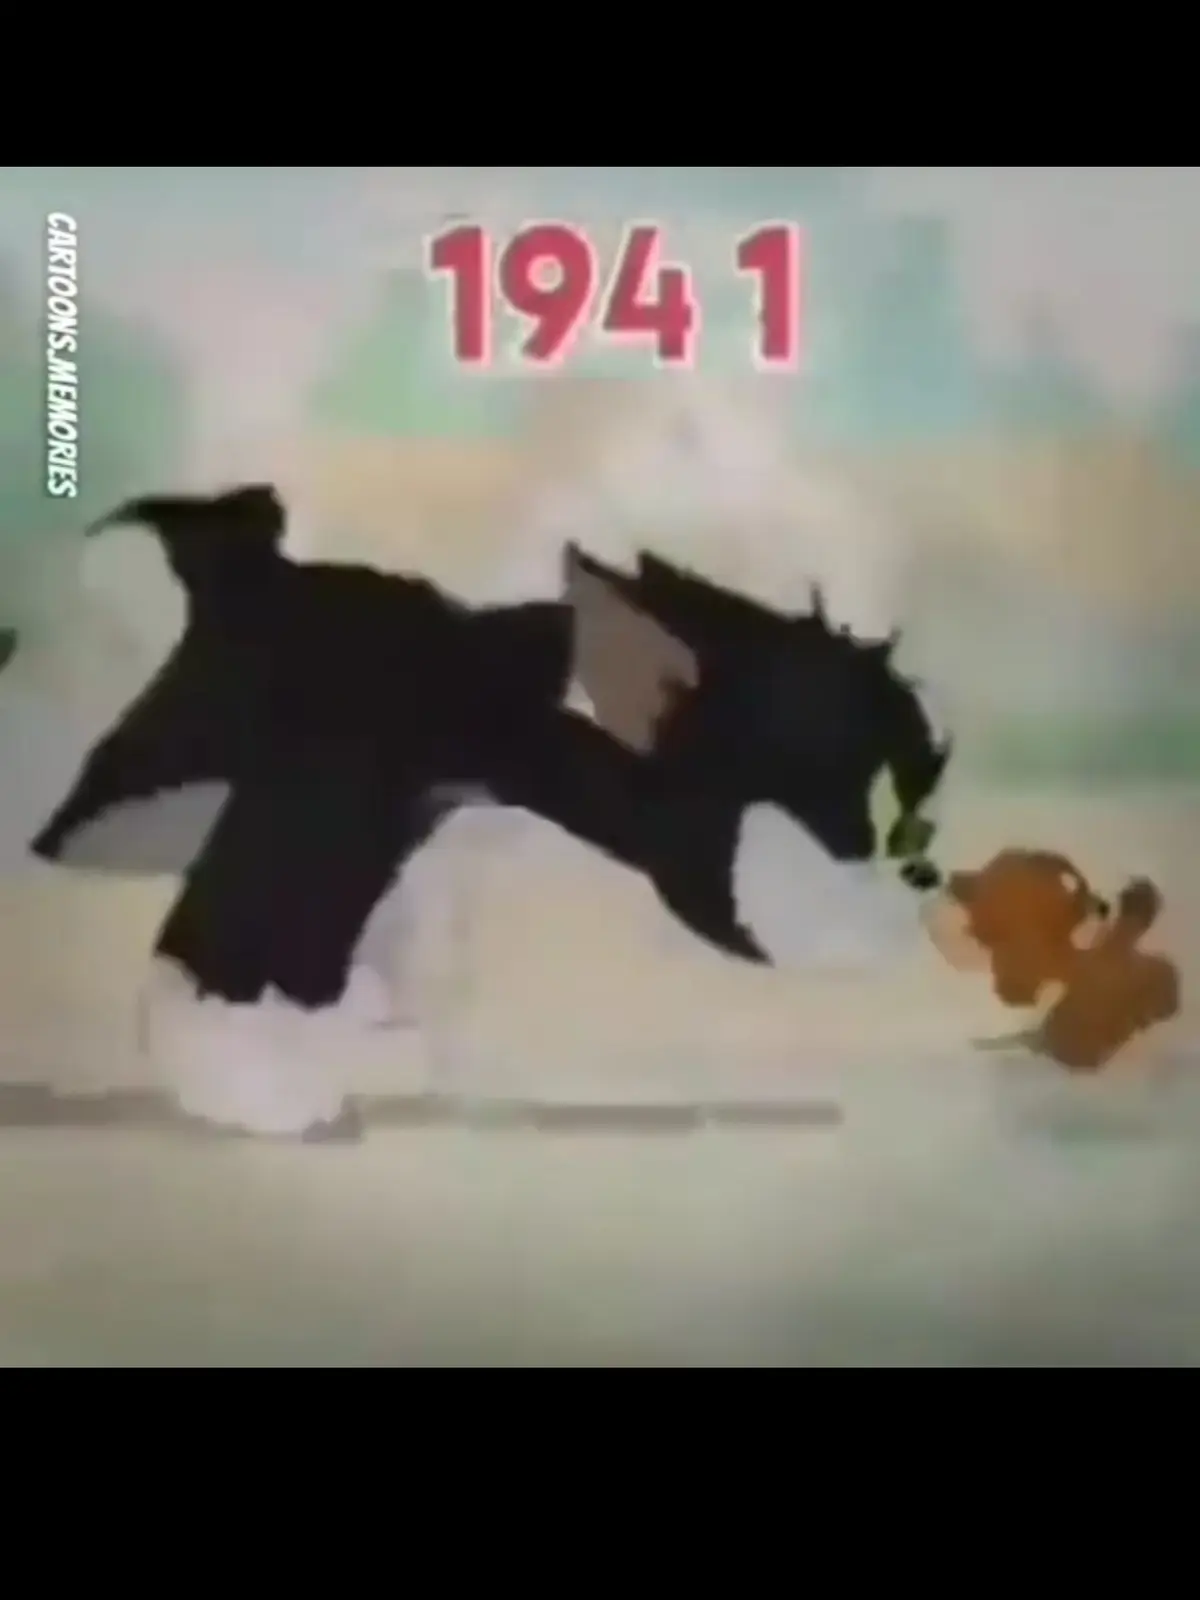 80 سال کارتون "تام و جری" در 50 ثانیه + ویدئو